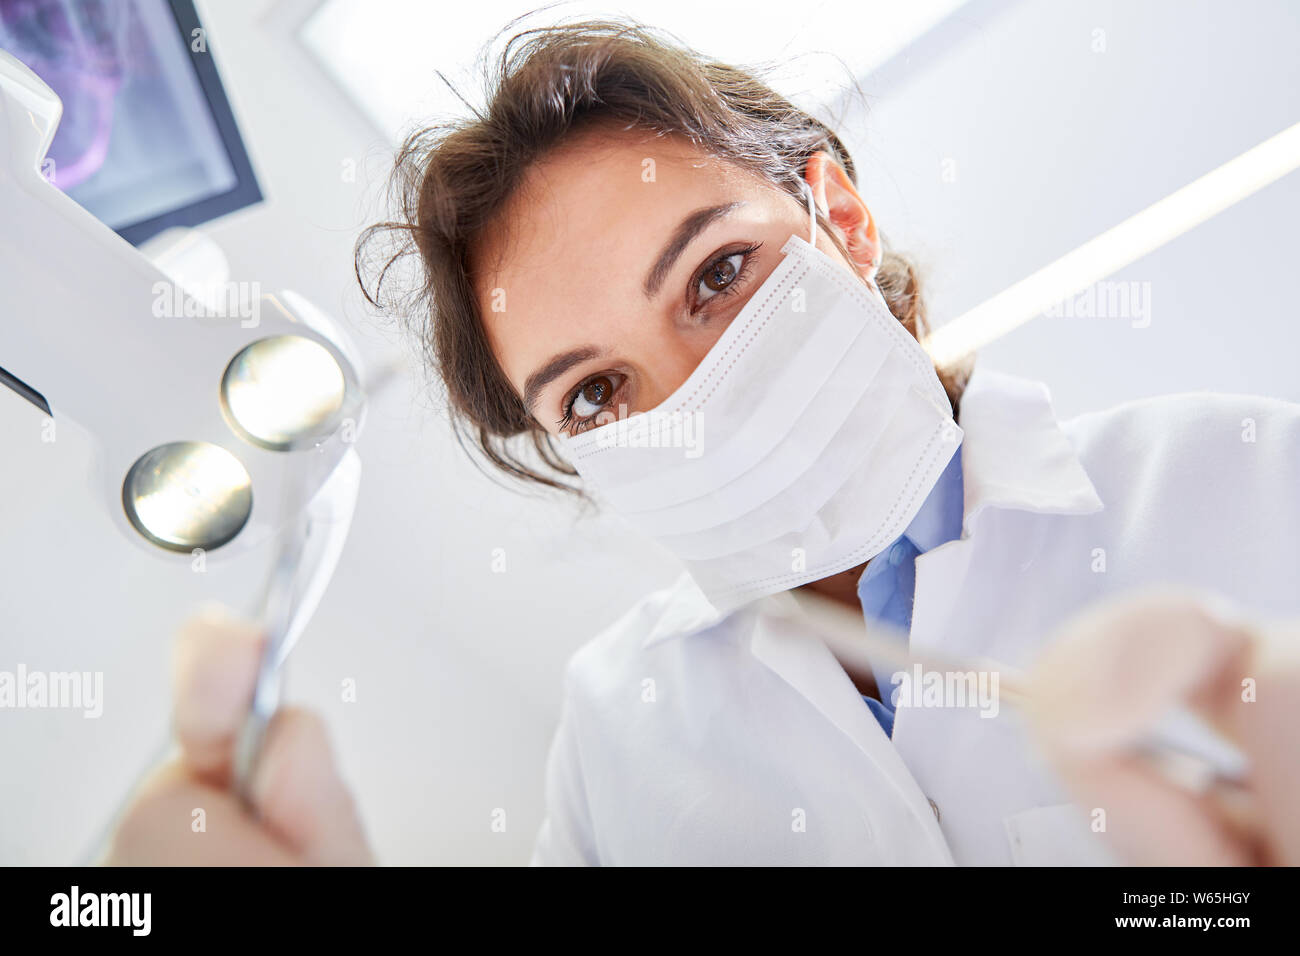 Junge Frau mit Mundschutz als Zahnarzt oder Zahnärztliche Assistentin in  Ausbildung Stockfotografie - Alamy